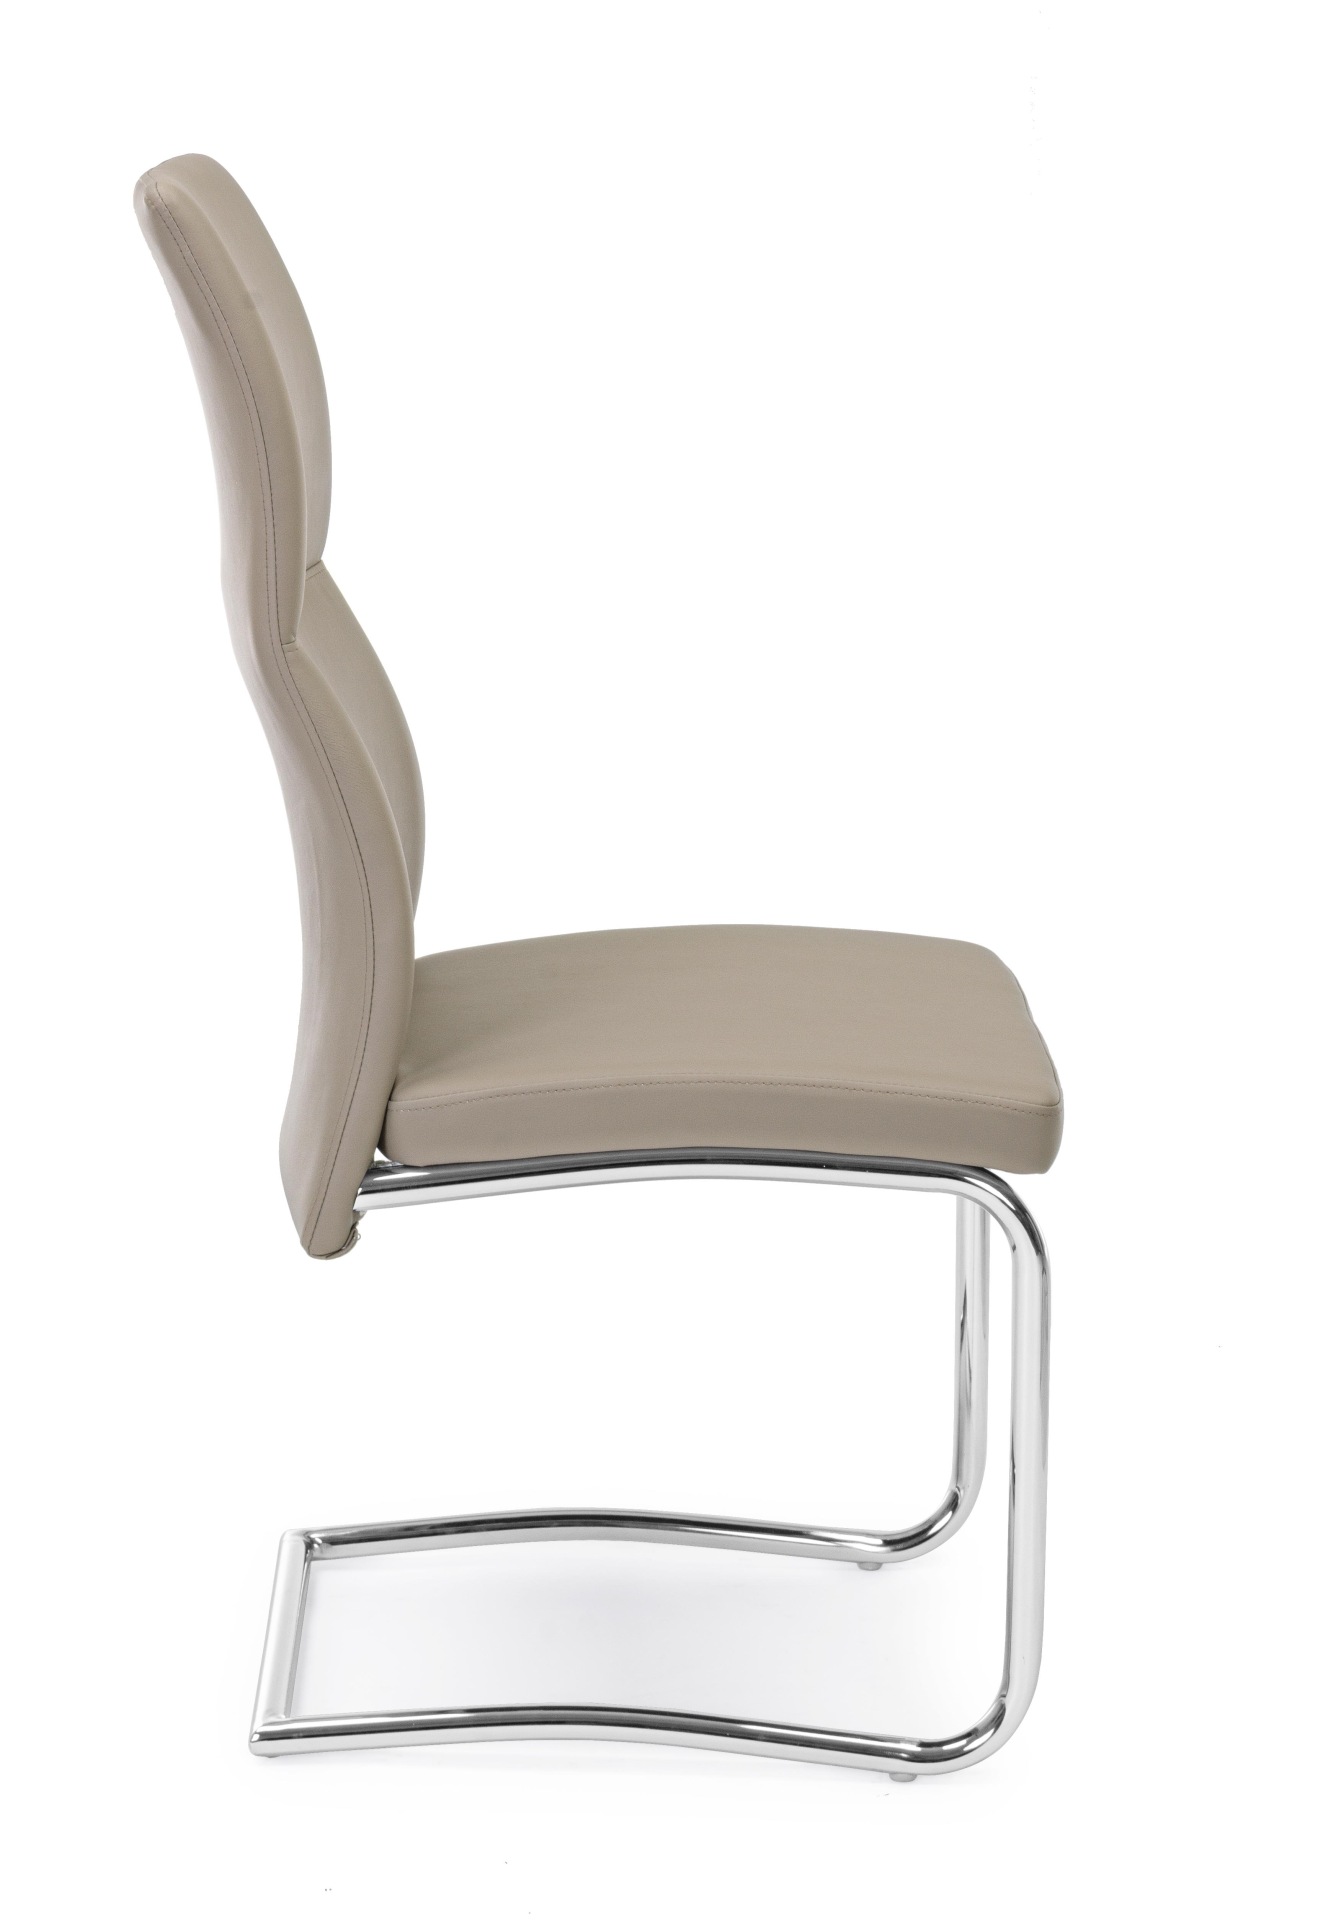 Der Esszimmerstuhl Thelma überzeugt mit seinem modernem Design. Gefertigt wurde der Stuhl aus Kunstleder, welches einen Taupe Farbton besitzt. Das Gestell ist aus Metall und ist Silber. Die Sitzhöhe beträgt 47 cm.